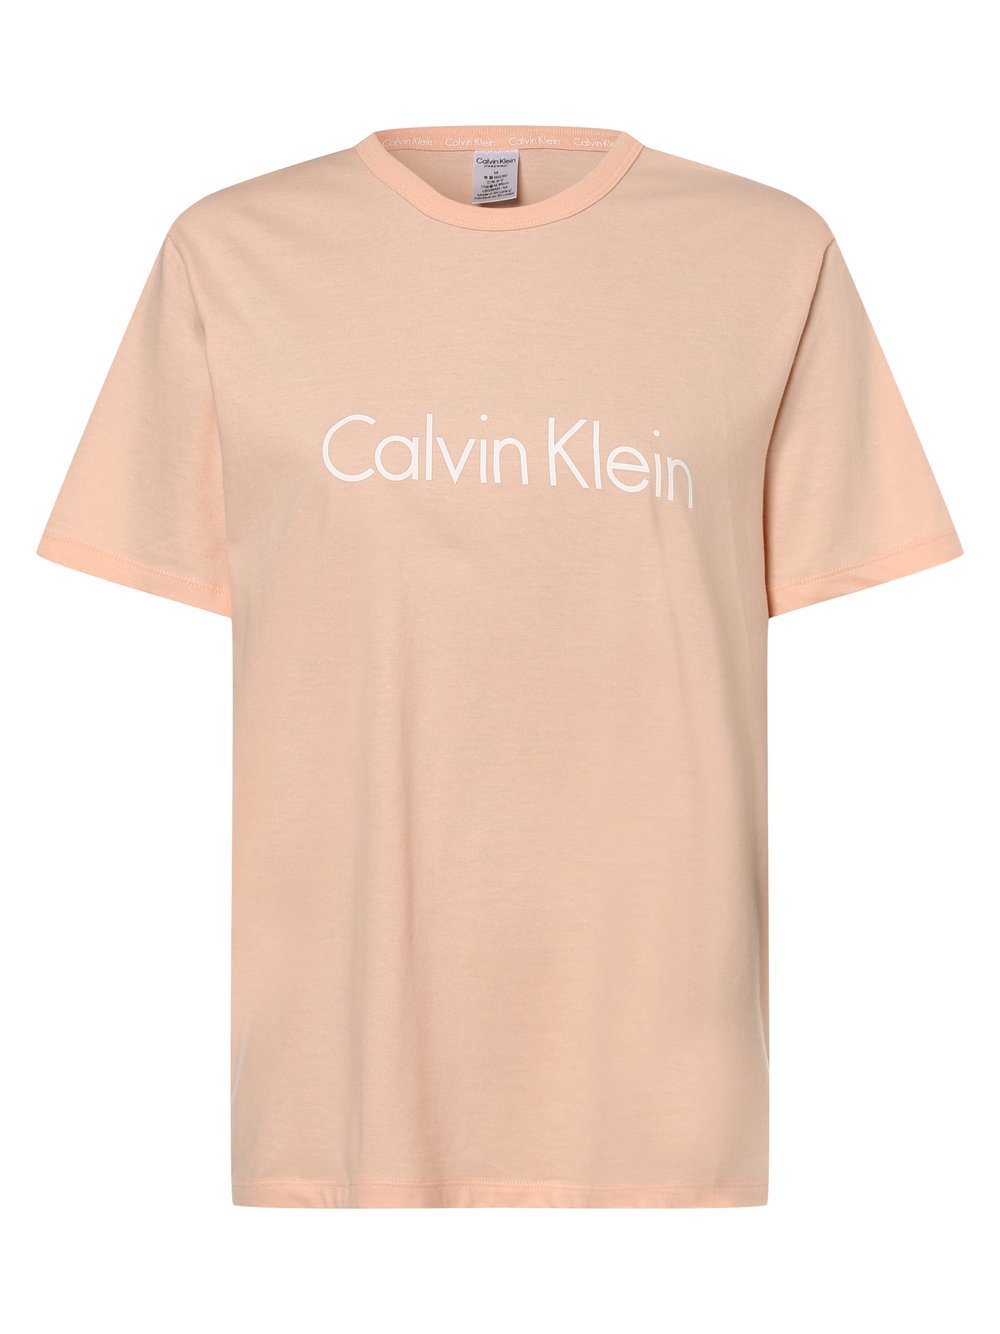 Calvin Klein - T-shirt damski, pomarańczowy|różowy